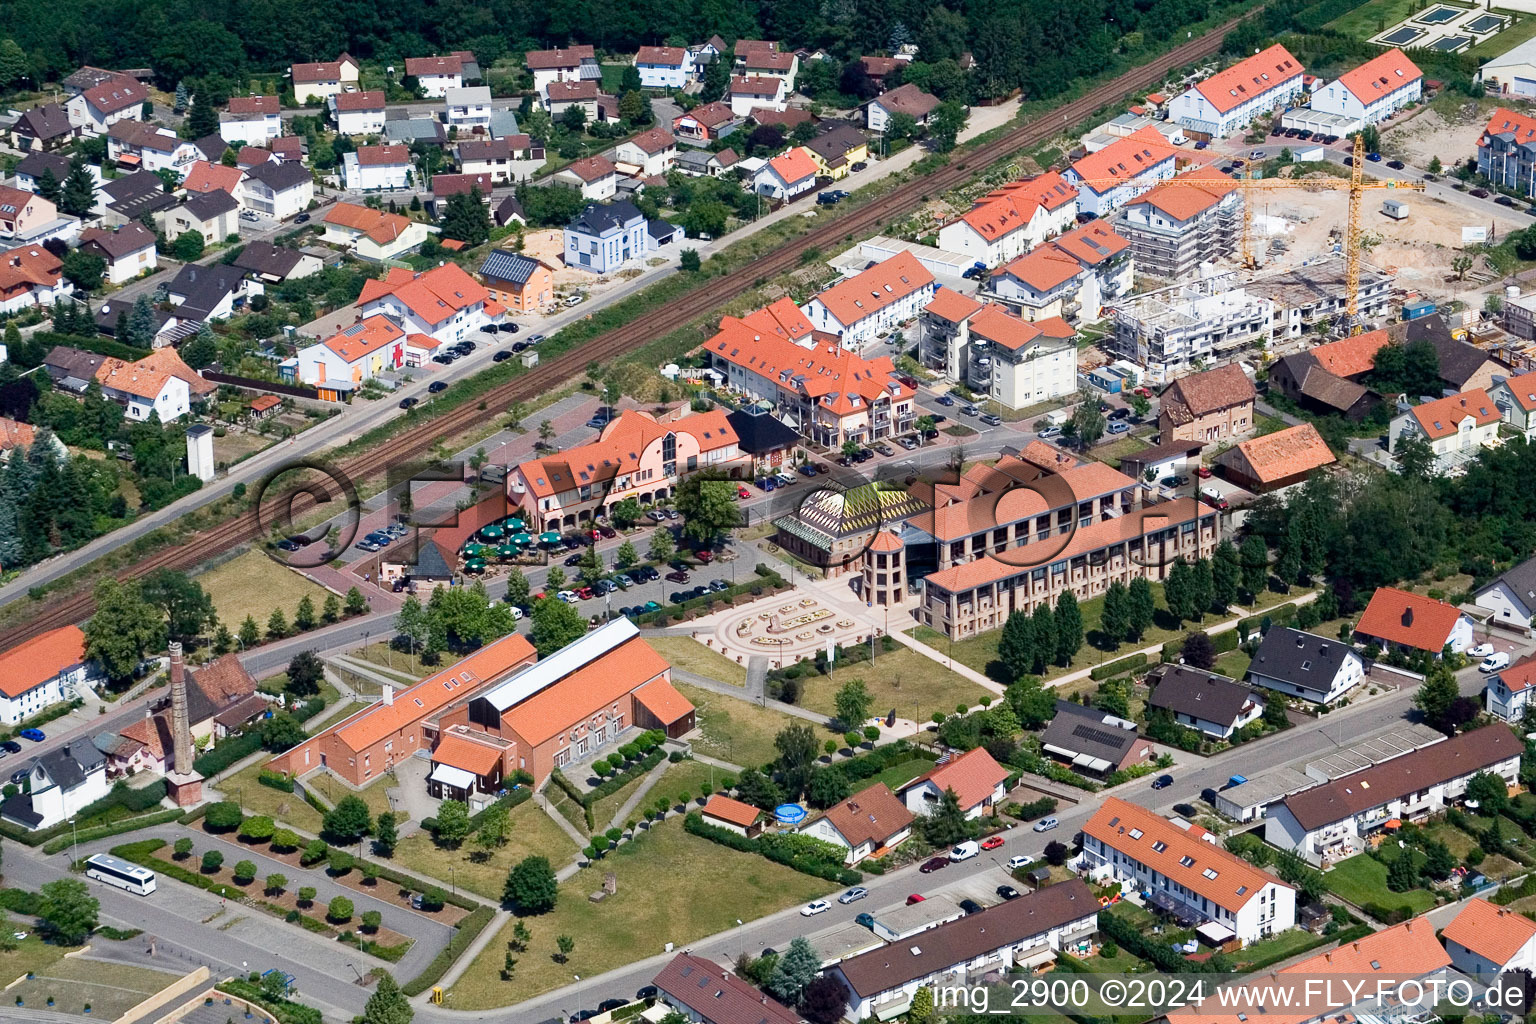 Vue aérienne de Hôtel de ville, musée de la briqueterie à Jockgrim dans le département Rhénanie-Palatinat, Allemagne